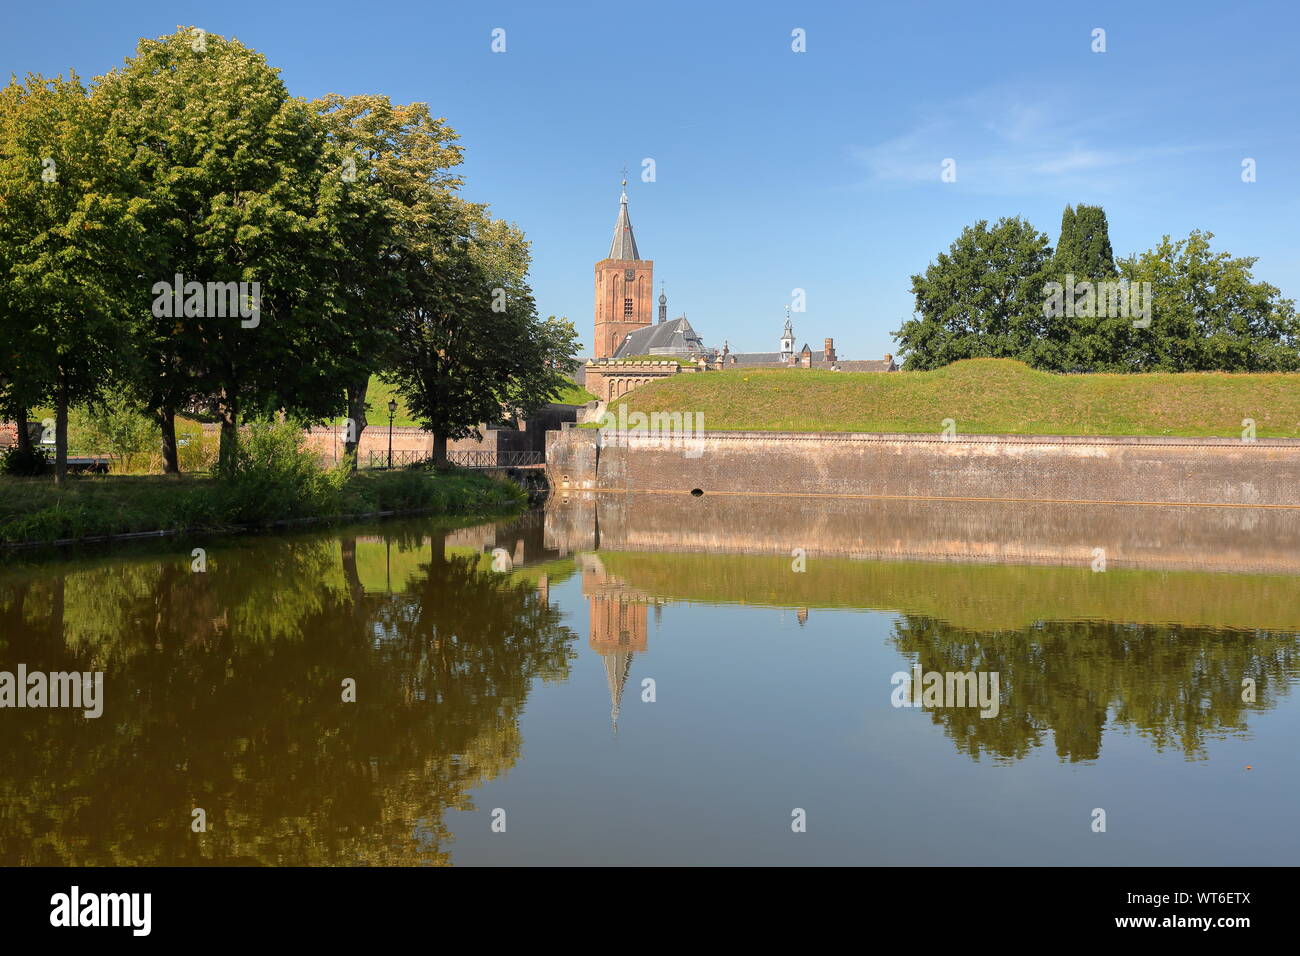 Le fortificazioni e fossati della città di Naarden, Paesi Bassi, con il Grote Kerk chiesa in background Foto Stock